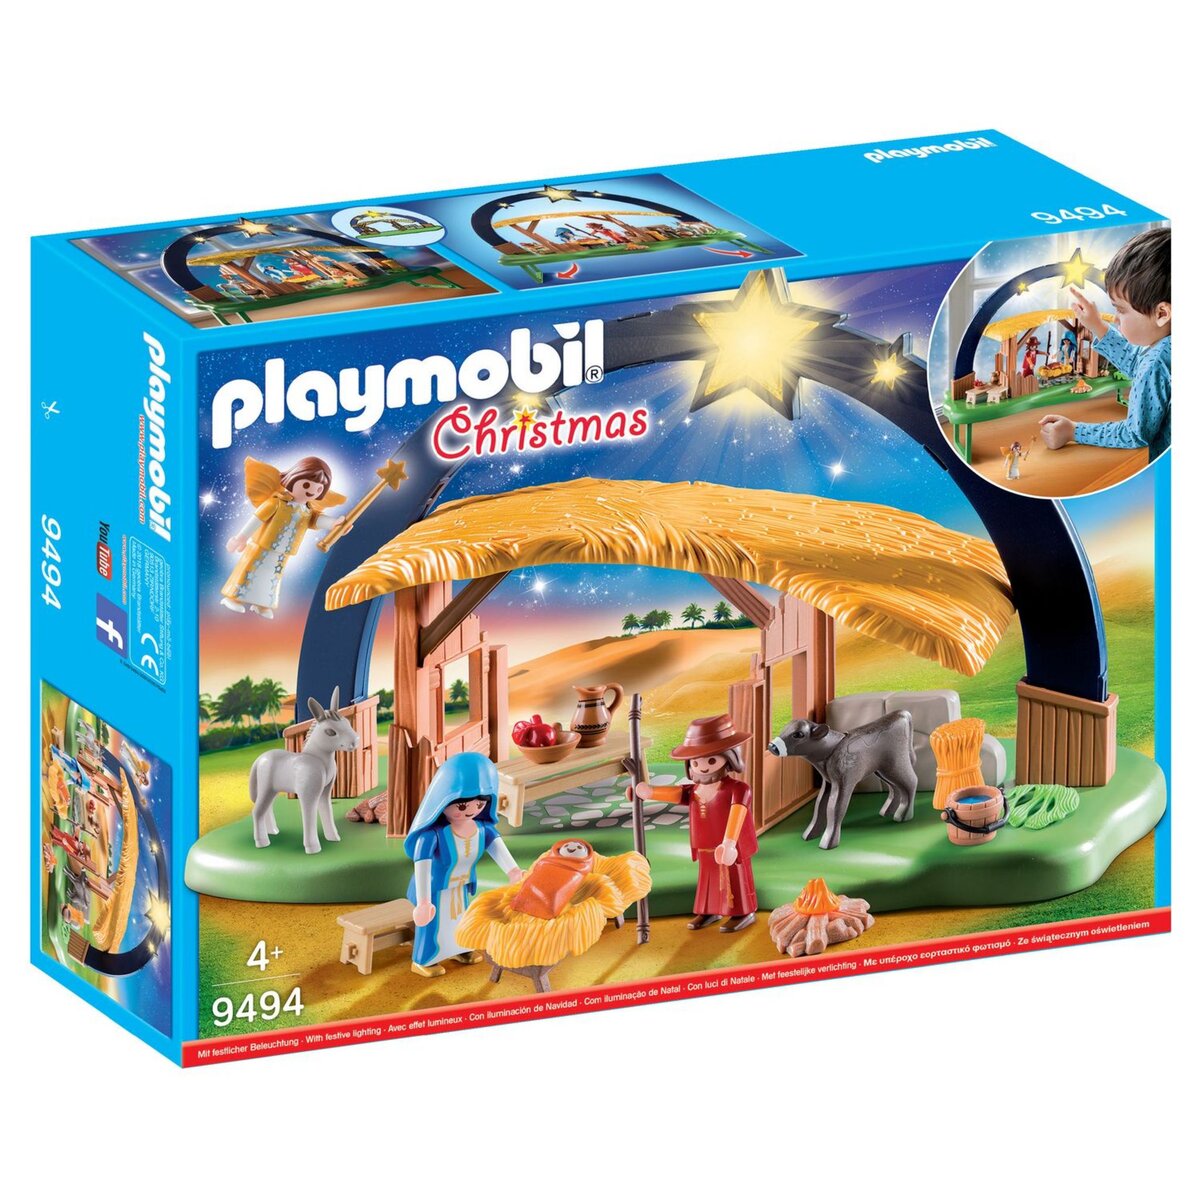 Playmobil La Magie de Noël - Achat / Vente Playmobil La Magie de